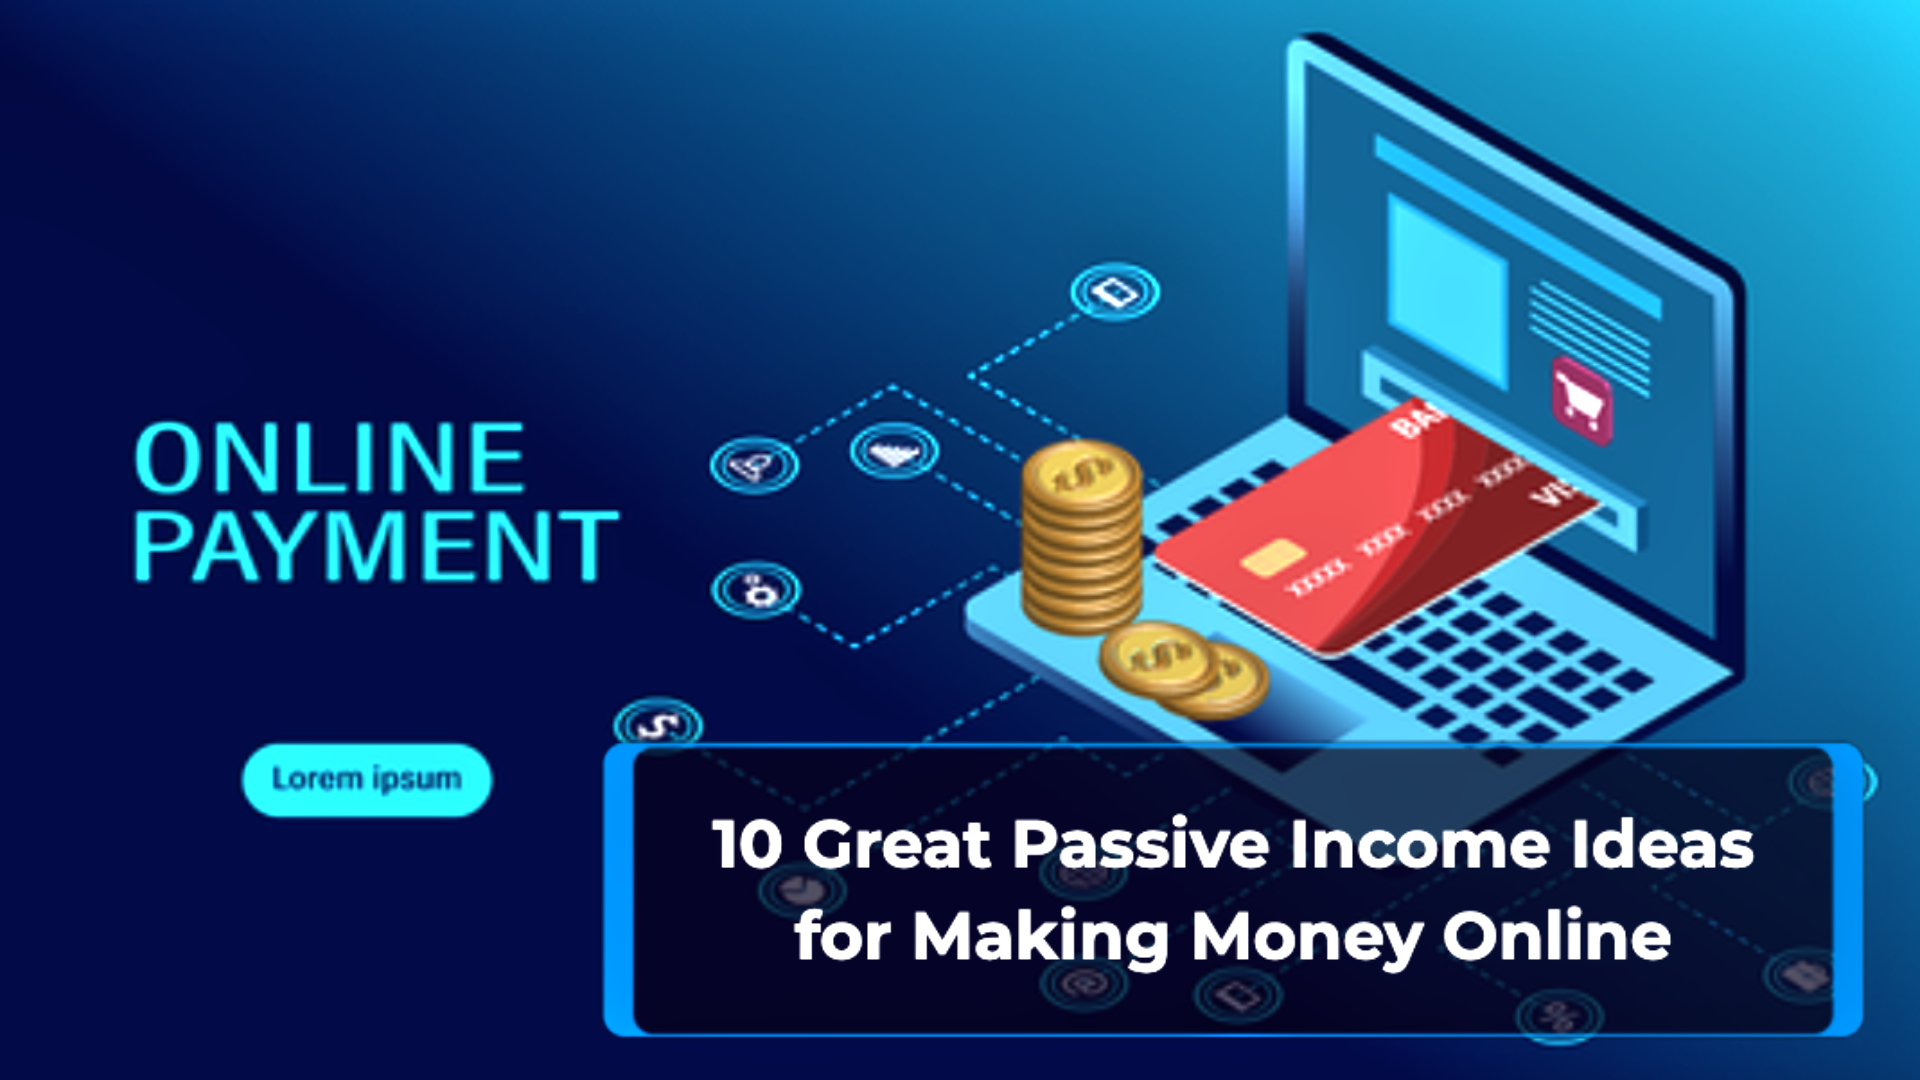 10 Passive Income Ideas Landscape